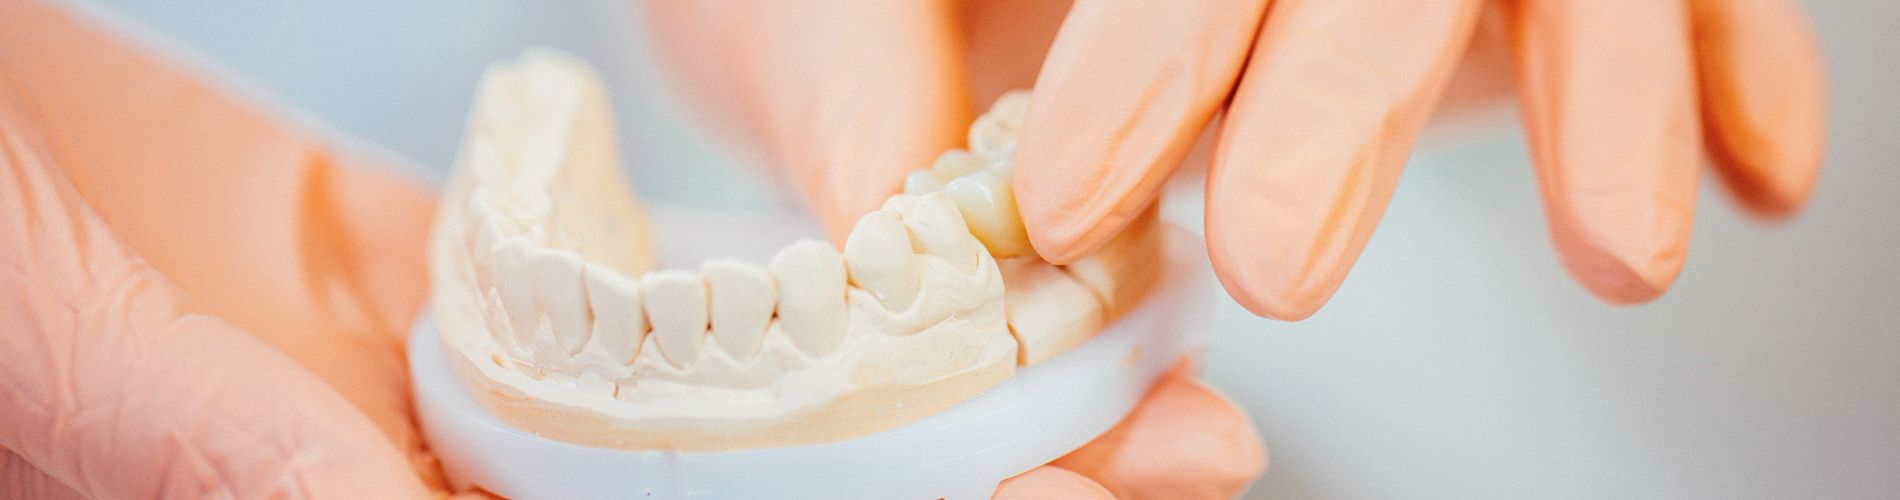 Implant Supported Dentures - Alvaro Ordonez